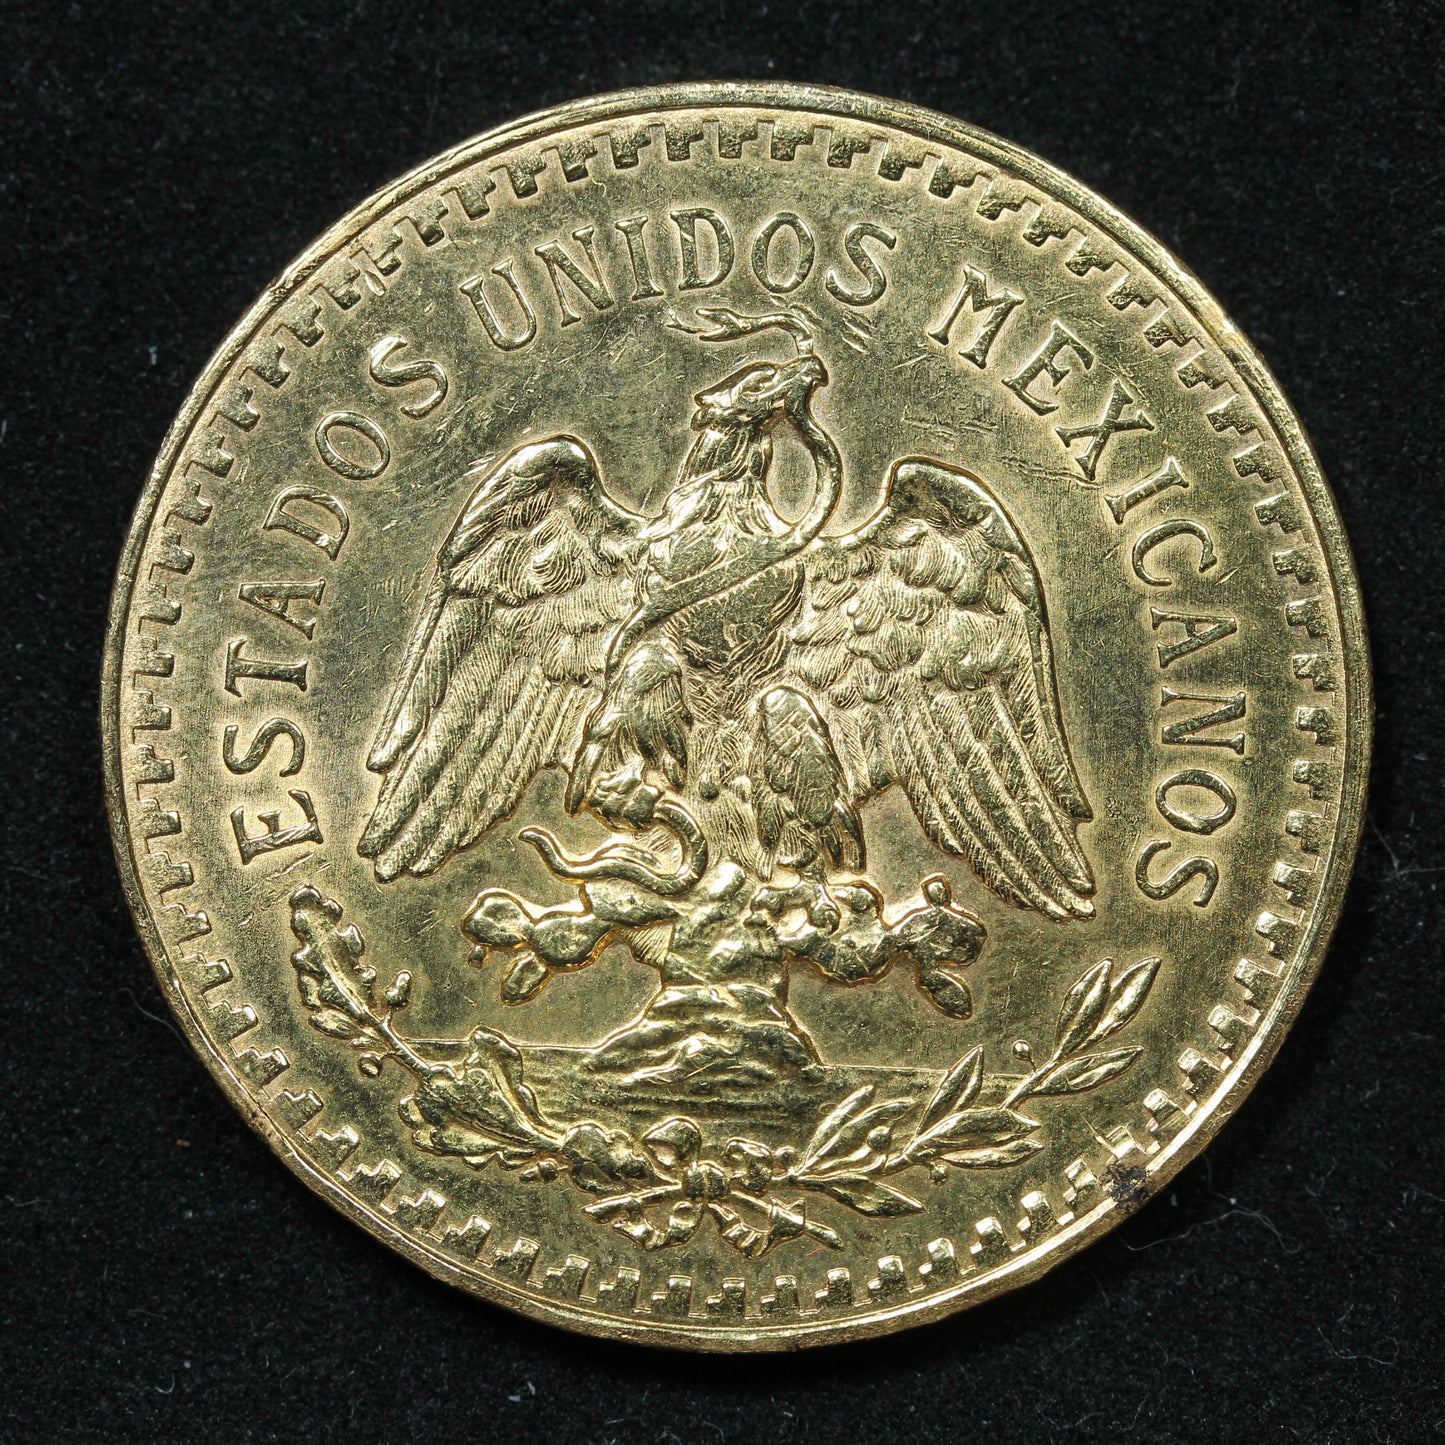 1927 50 Pesos Mexico Gold Coin Exact Coin Pictured